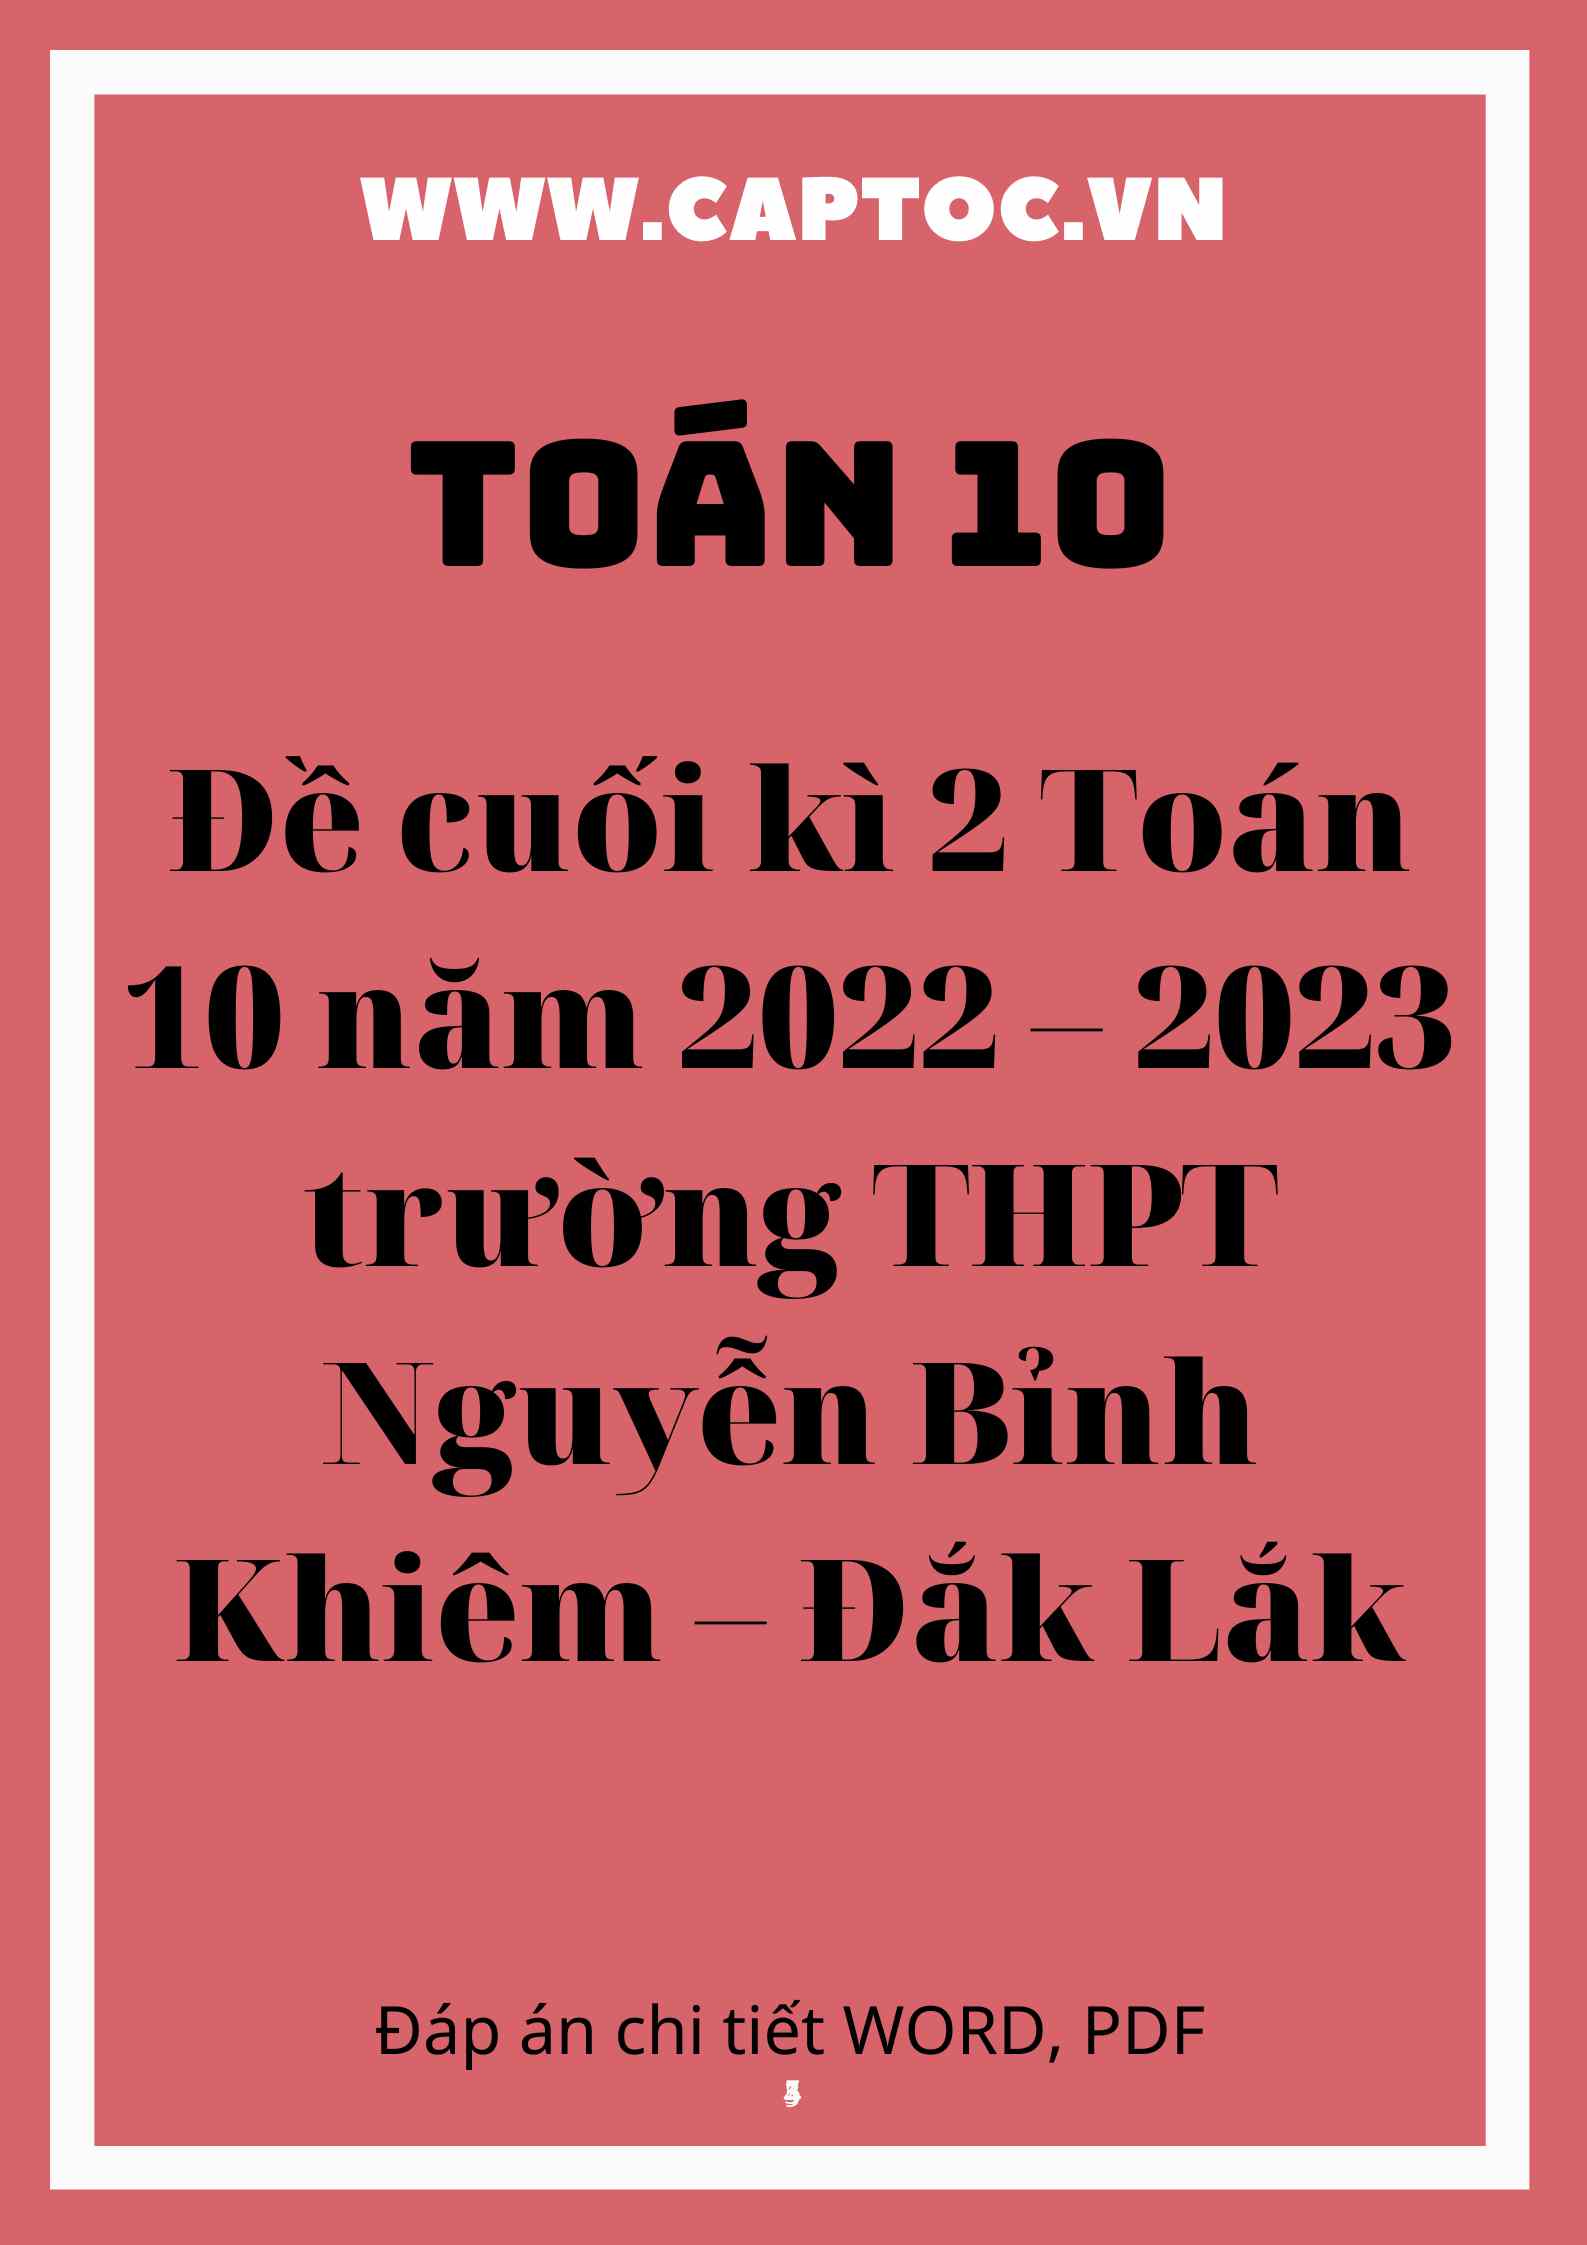 Đề cuối kì 2 Toán 10 năm 2022 – 2023 trường THPT Nguyễn Bỉnh Khiêm – Đắk Lắk